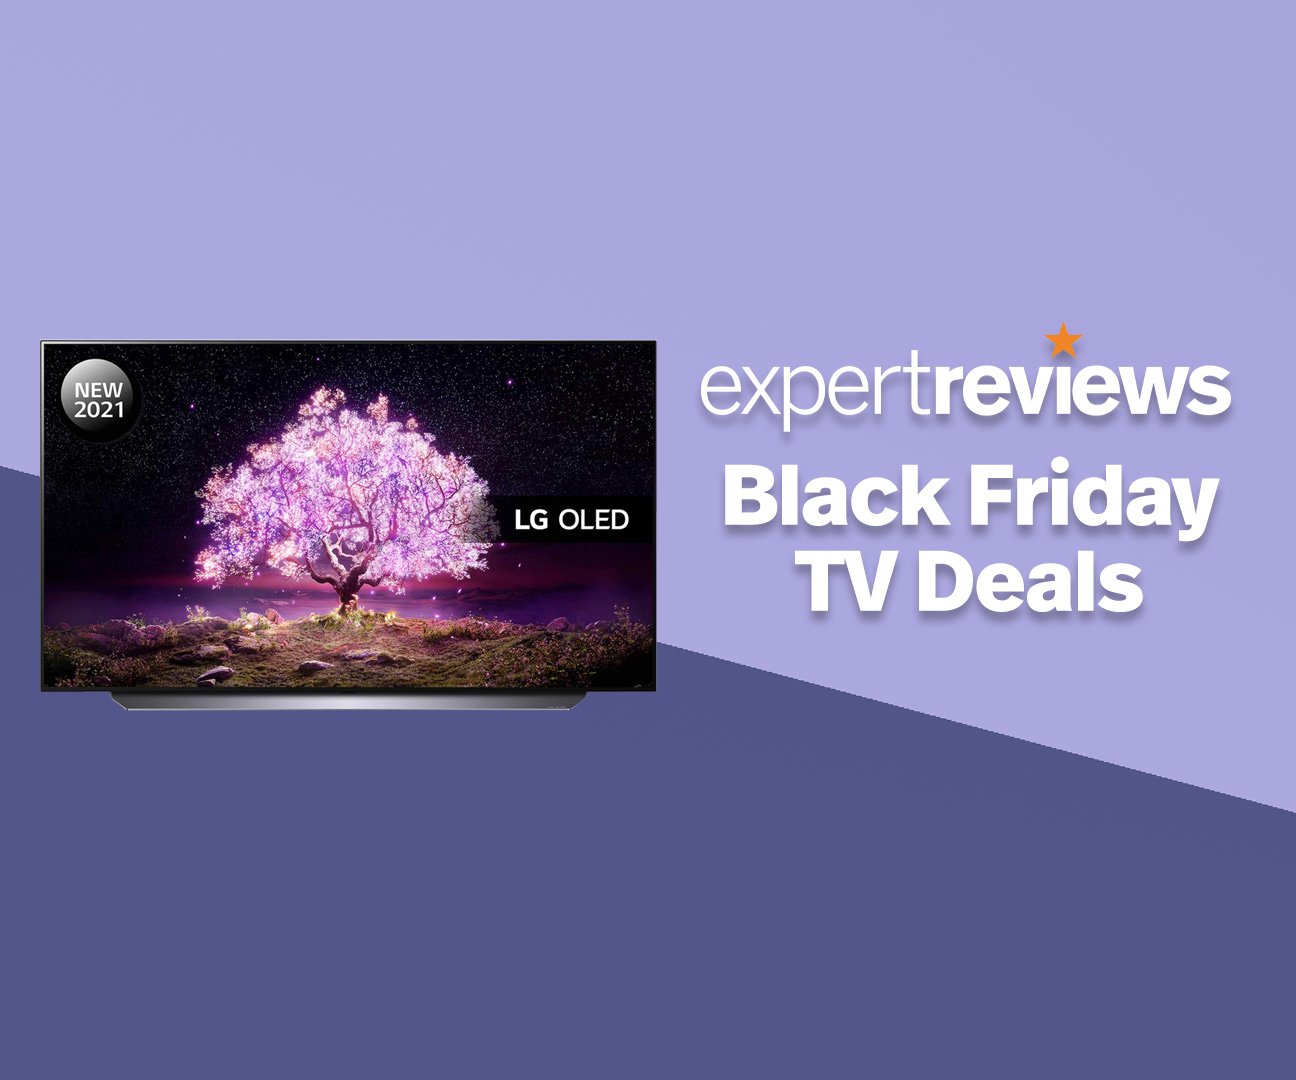 Ofertas de Black Friday OLED TV que NO querrá perderse